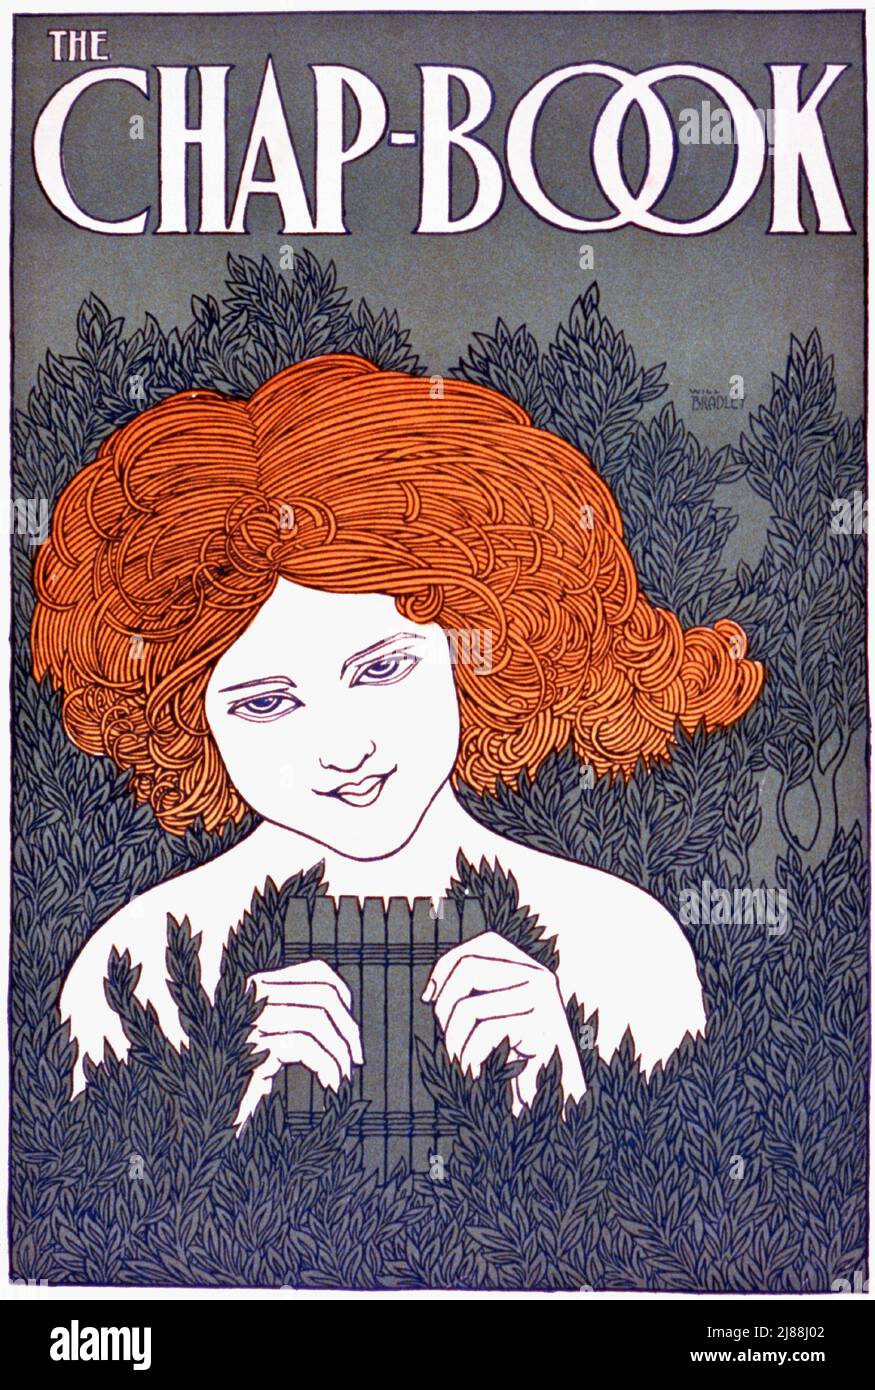 Un cartel de finales del siglo 19th de estilo Art Nouveau americano de una mujer joven con tubos de pan para el libro de chap, una revista literaria americana entre 1894 y 1898. El artista es Will Bradley (1868-1962) Foto de stock